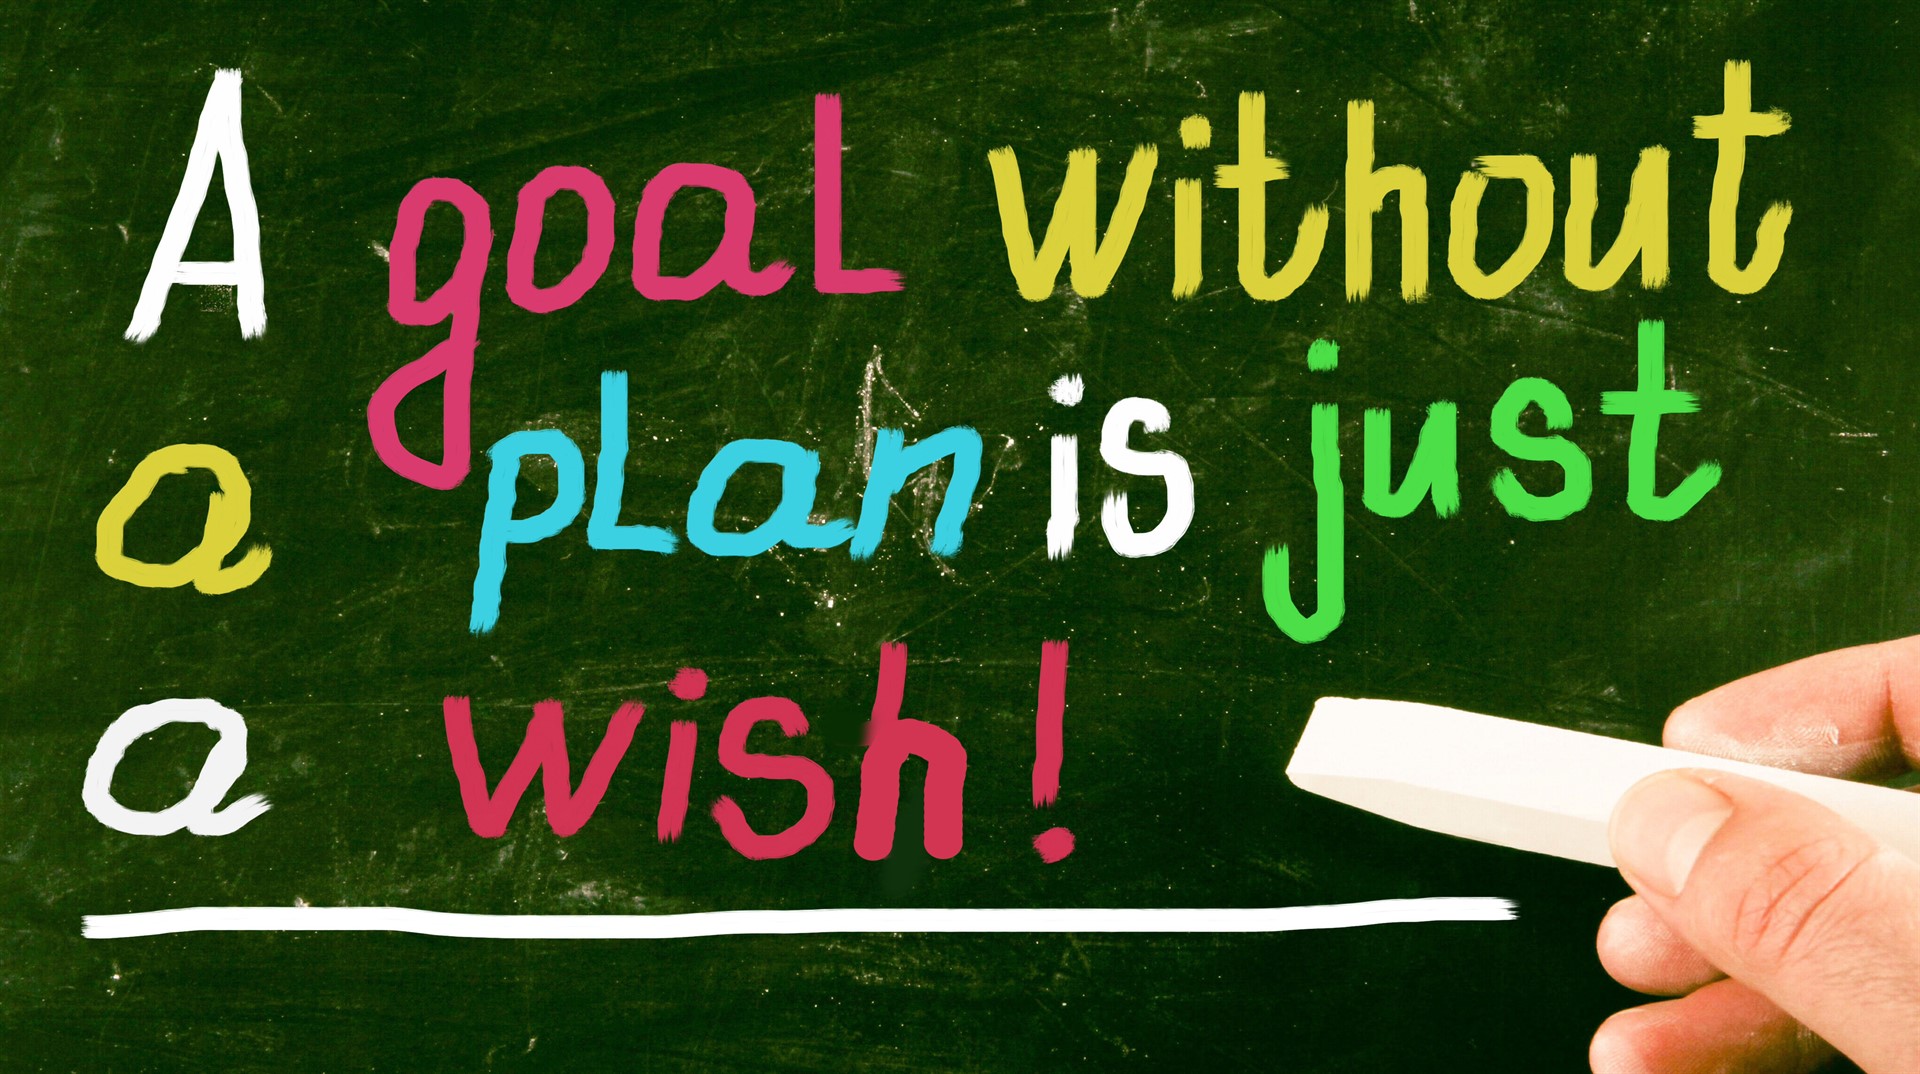 Goals-Plan-Wish_1920x1074.jpg